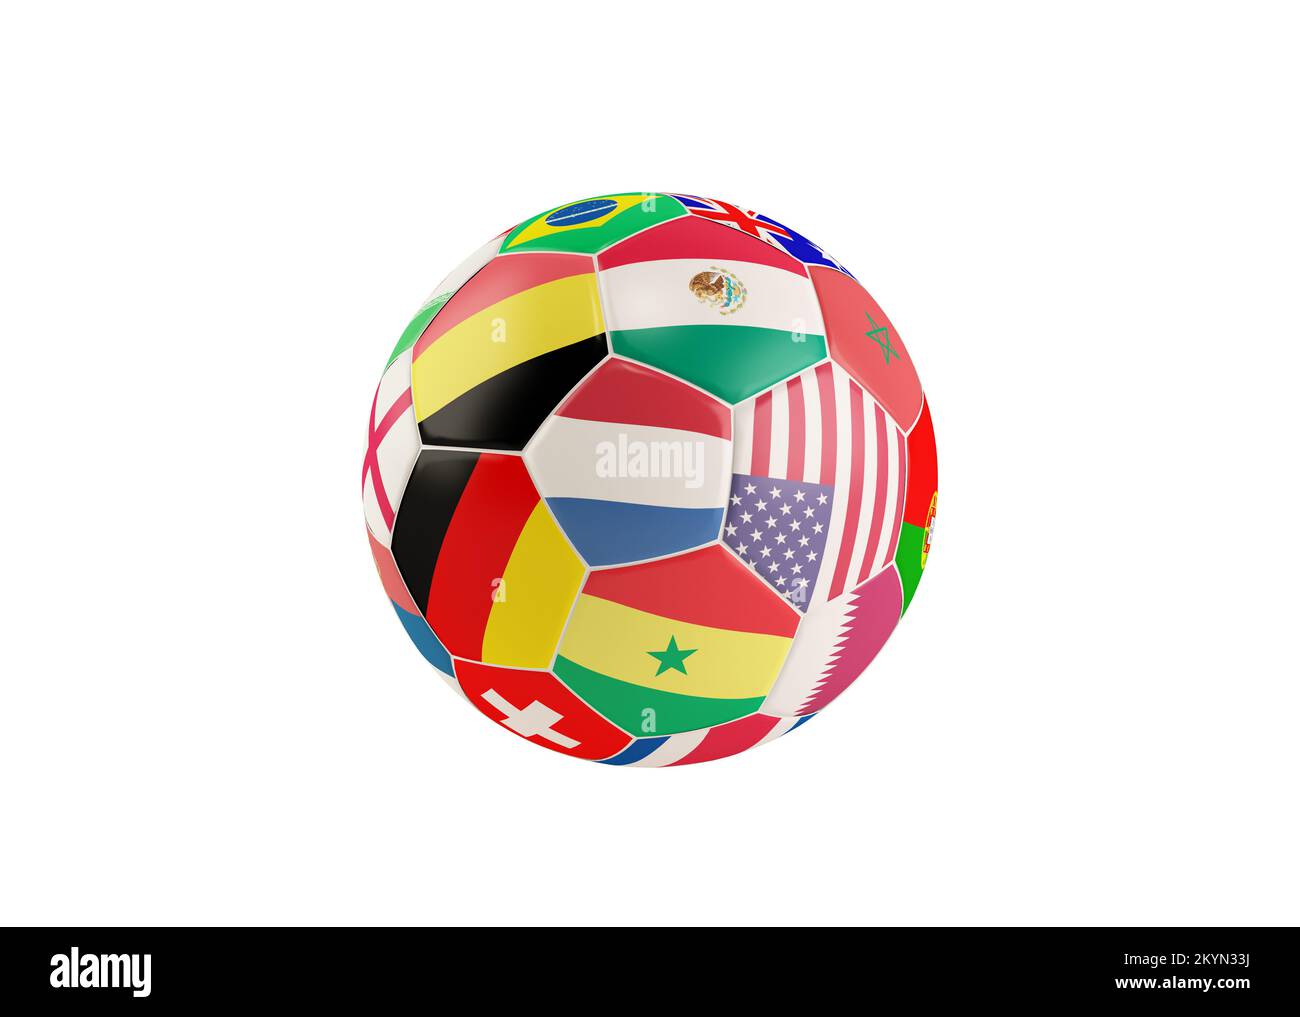 3d mise en scène du ballon de football avec les drapeaux nationaux de l'équipe du qatar 2022 Banque D'Images